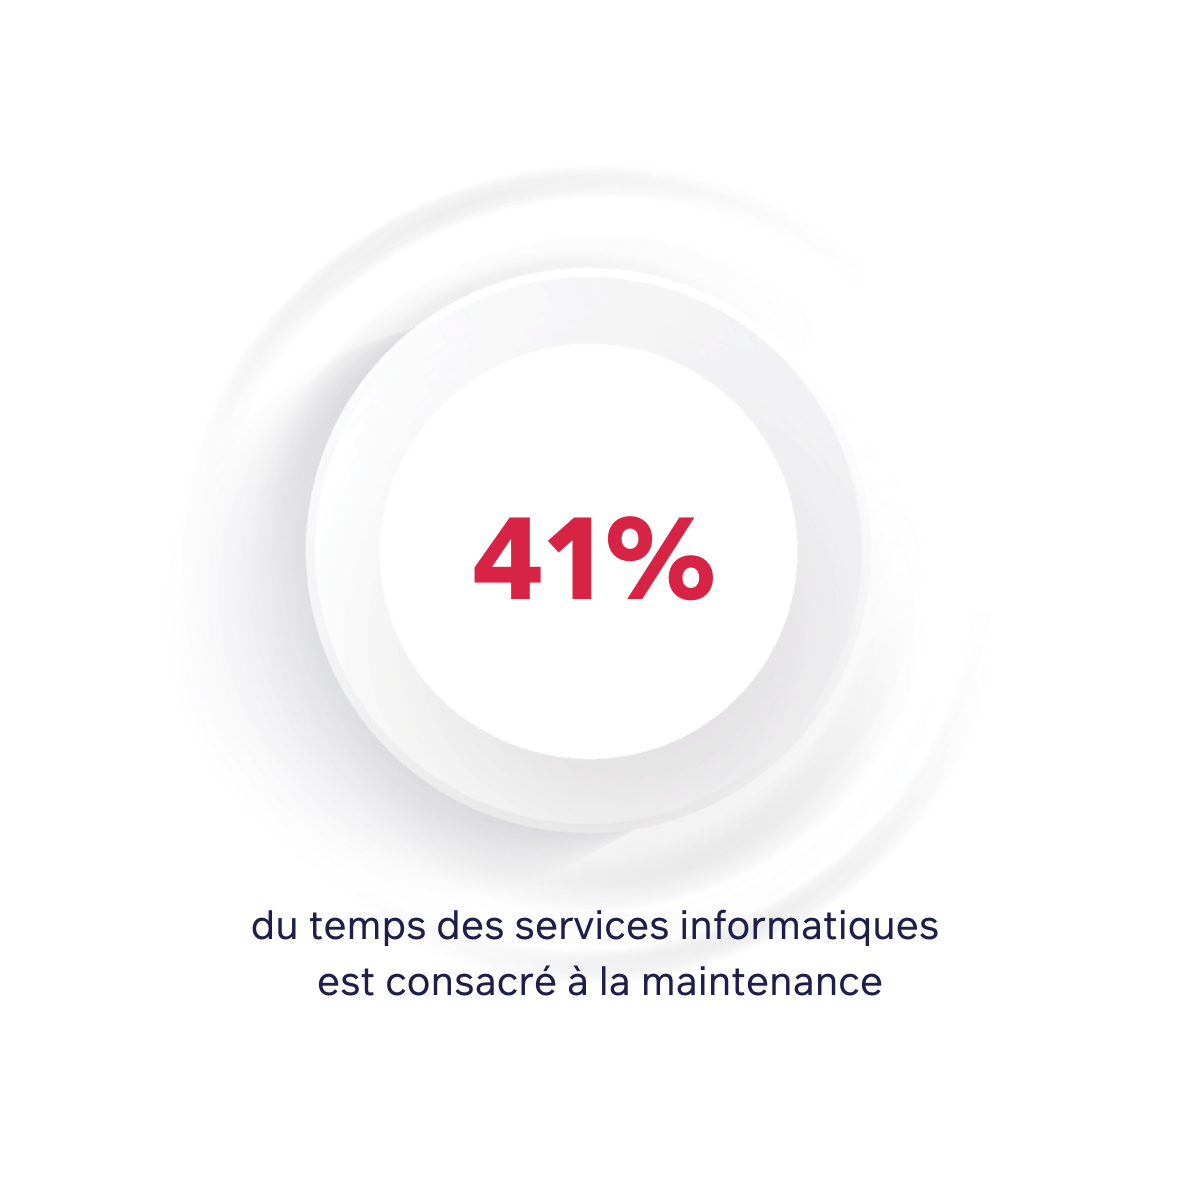 41% de temps consacré à la maintenance